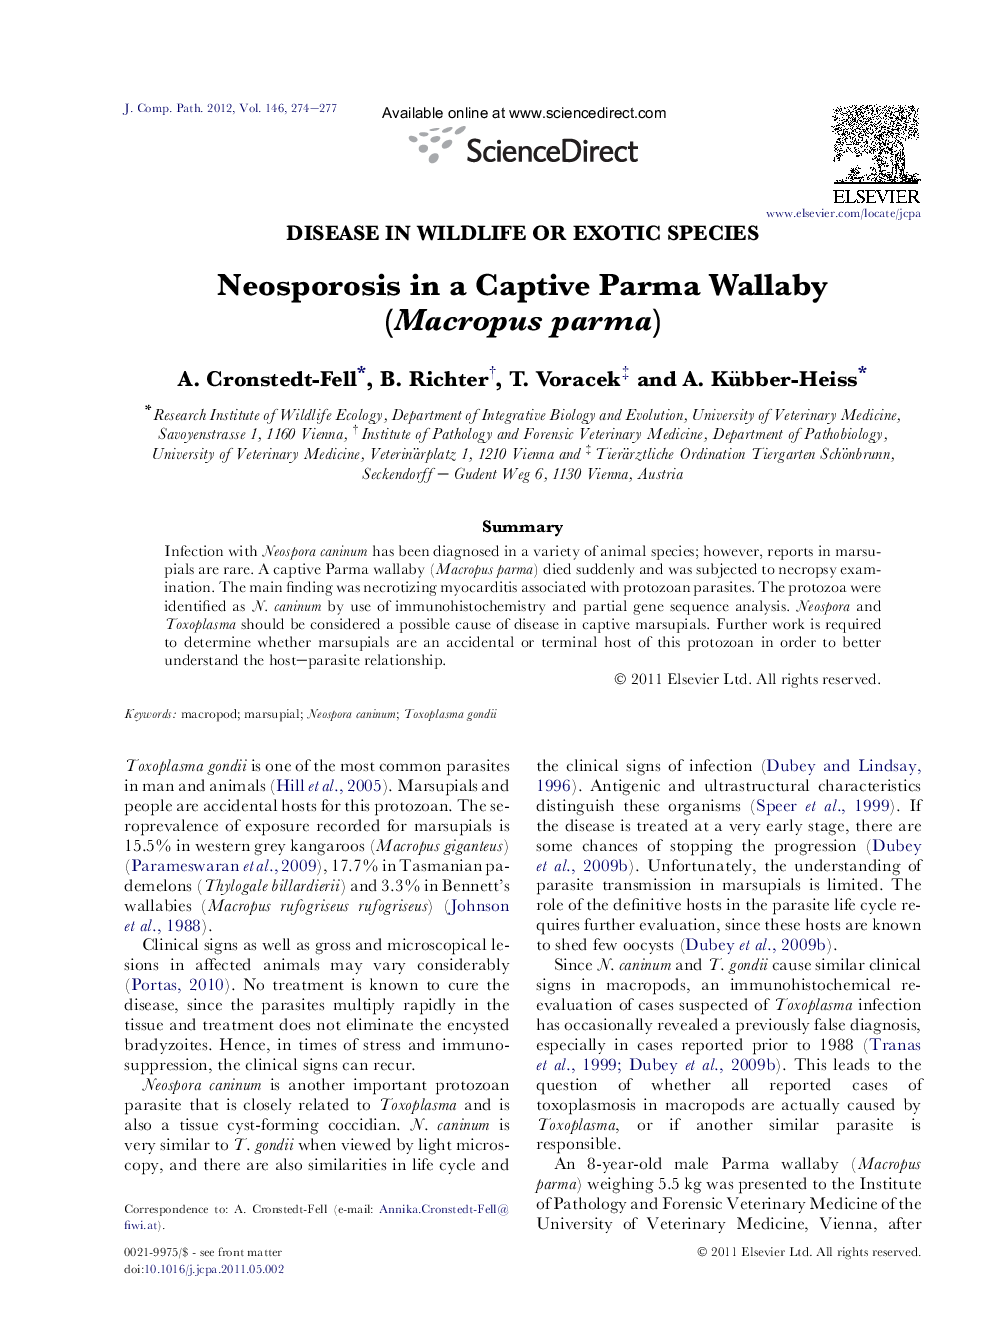 Neosporosis in a Captive Parma Wallaby (Macropus parma)